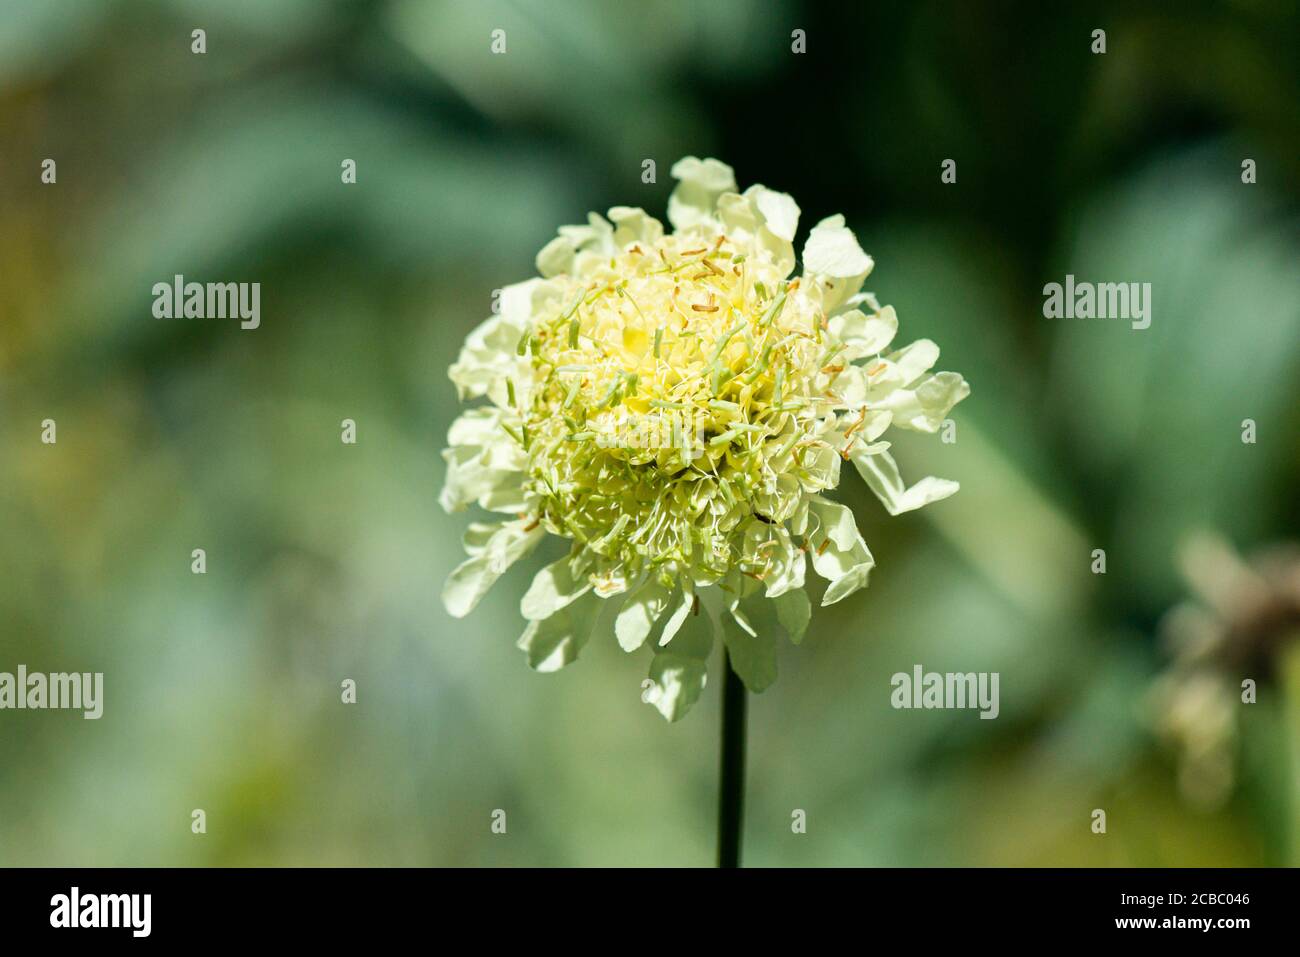 The flower of a giant scabious (Cephalaria gigantea) Stock Photo